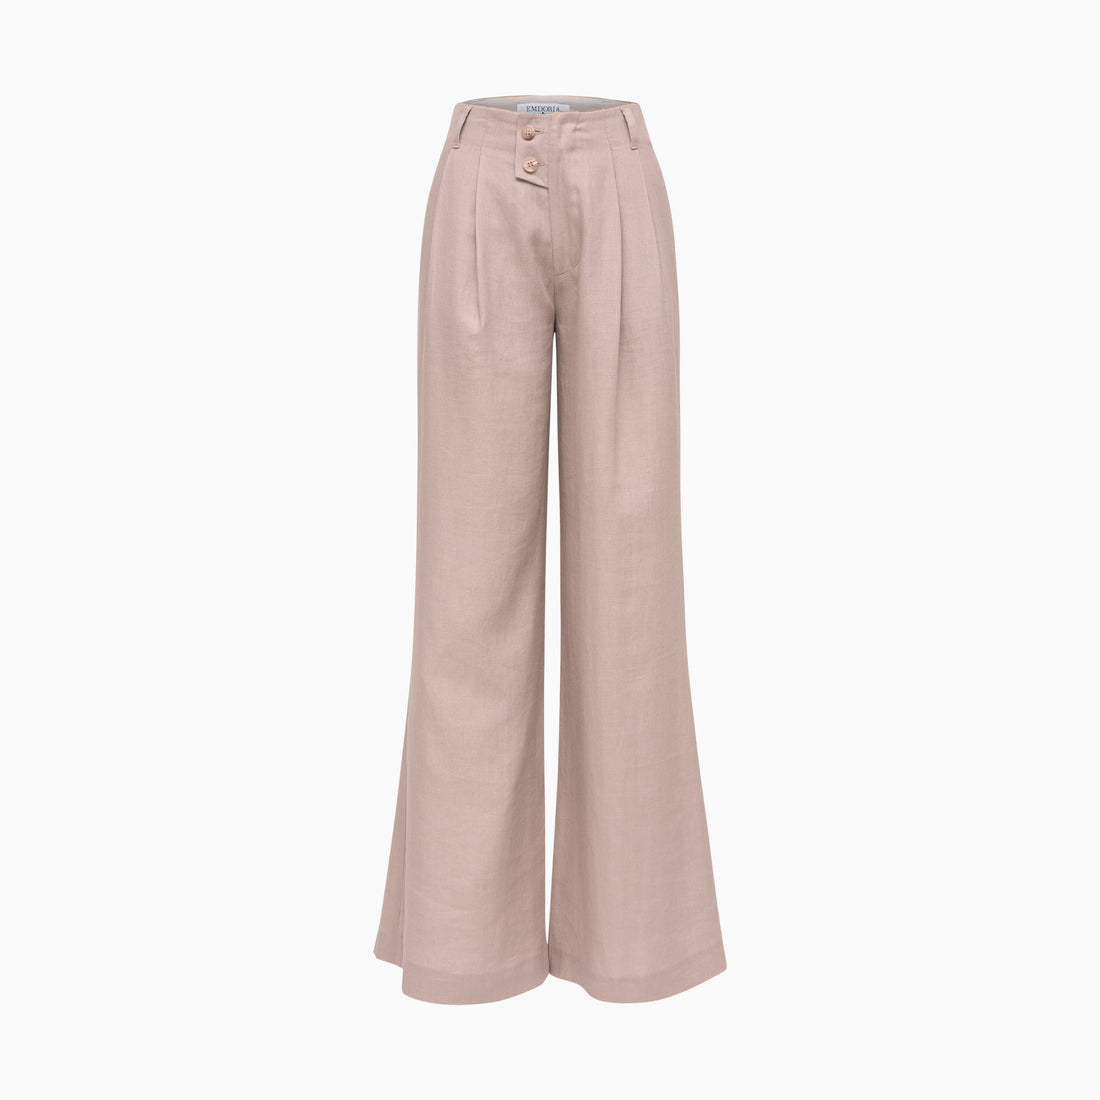 Pantalon à plis large et fluide en Lin naturel-Pantalon- new-new in-Nouveauté-EMDORIA PARIS